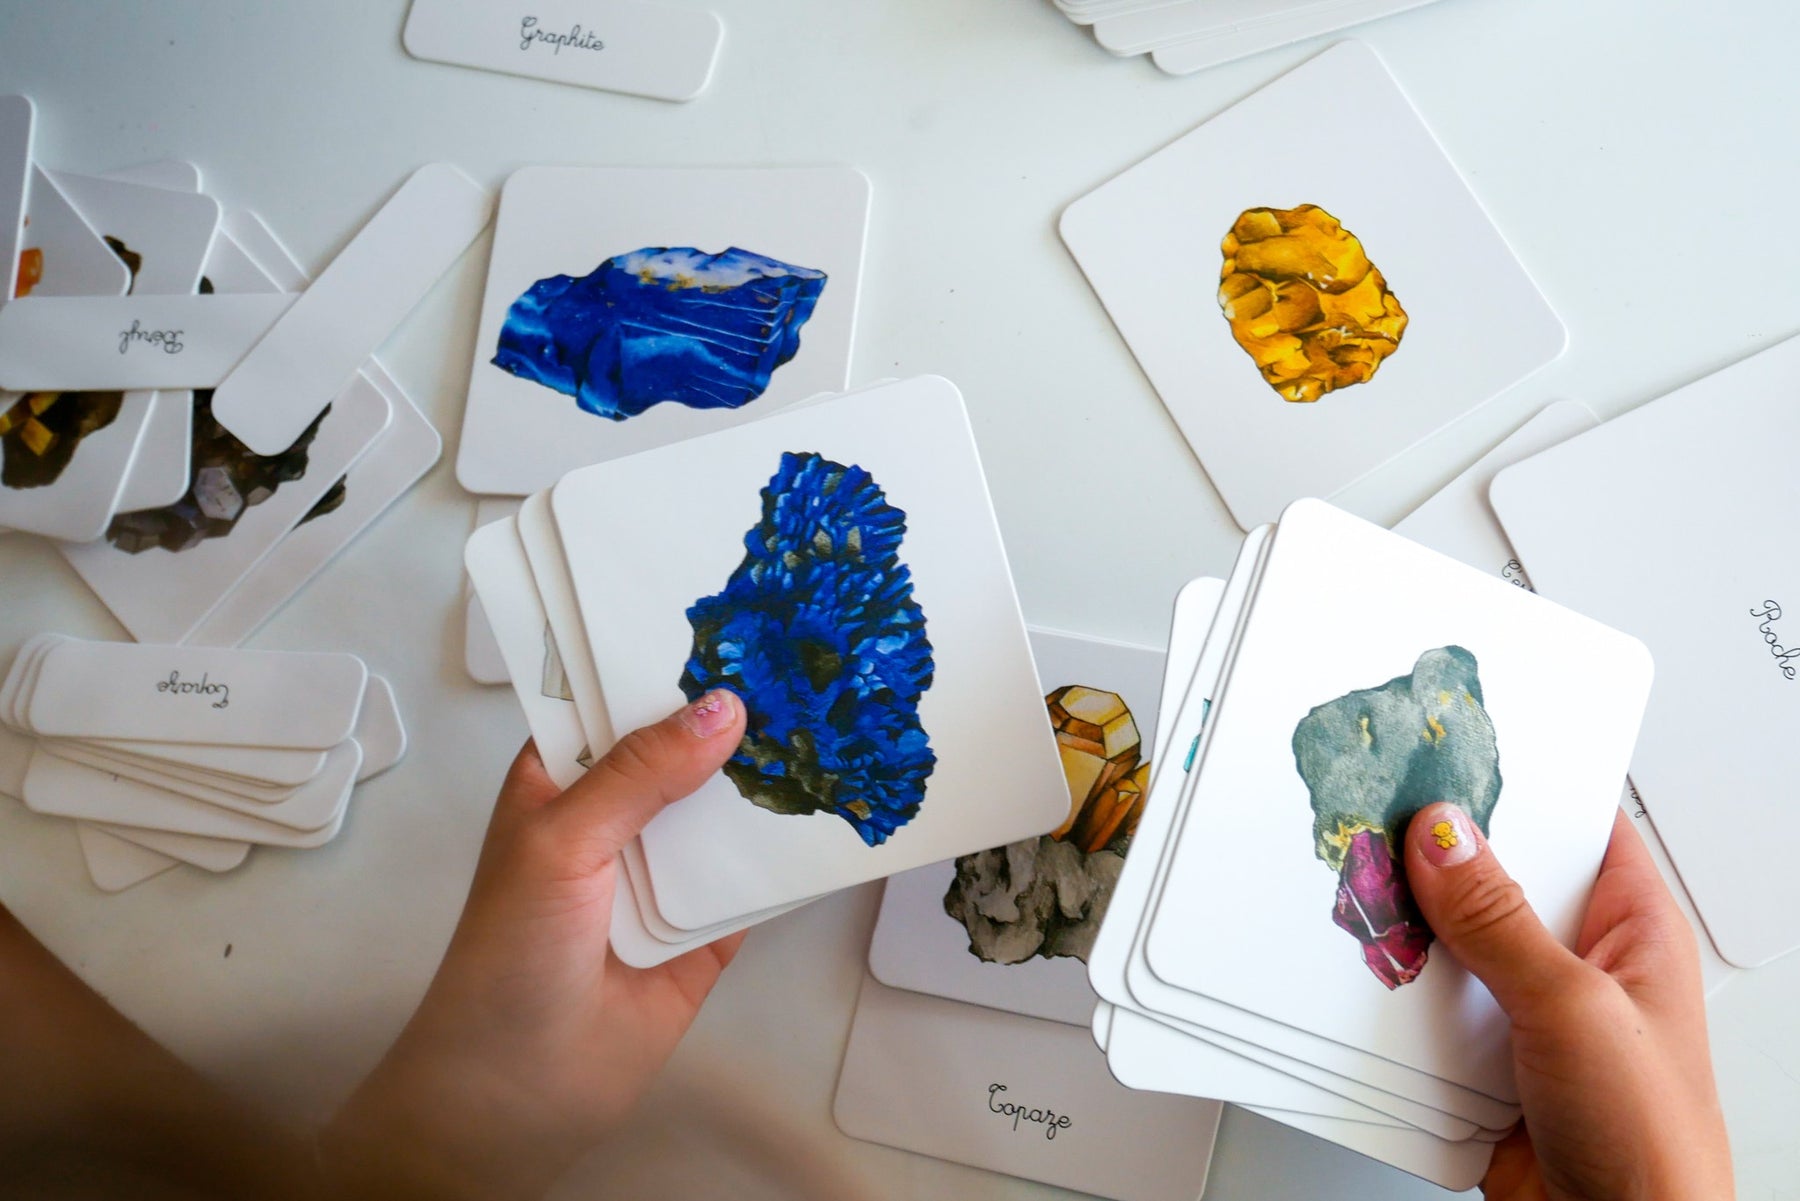 Mon coffret Montessori des minéraux - Avec 2 pierres véritables